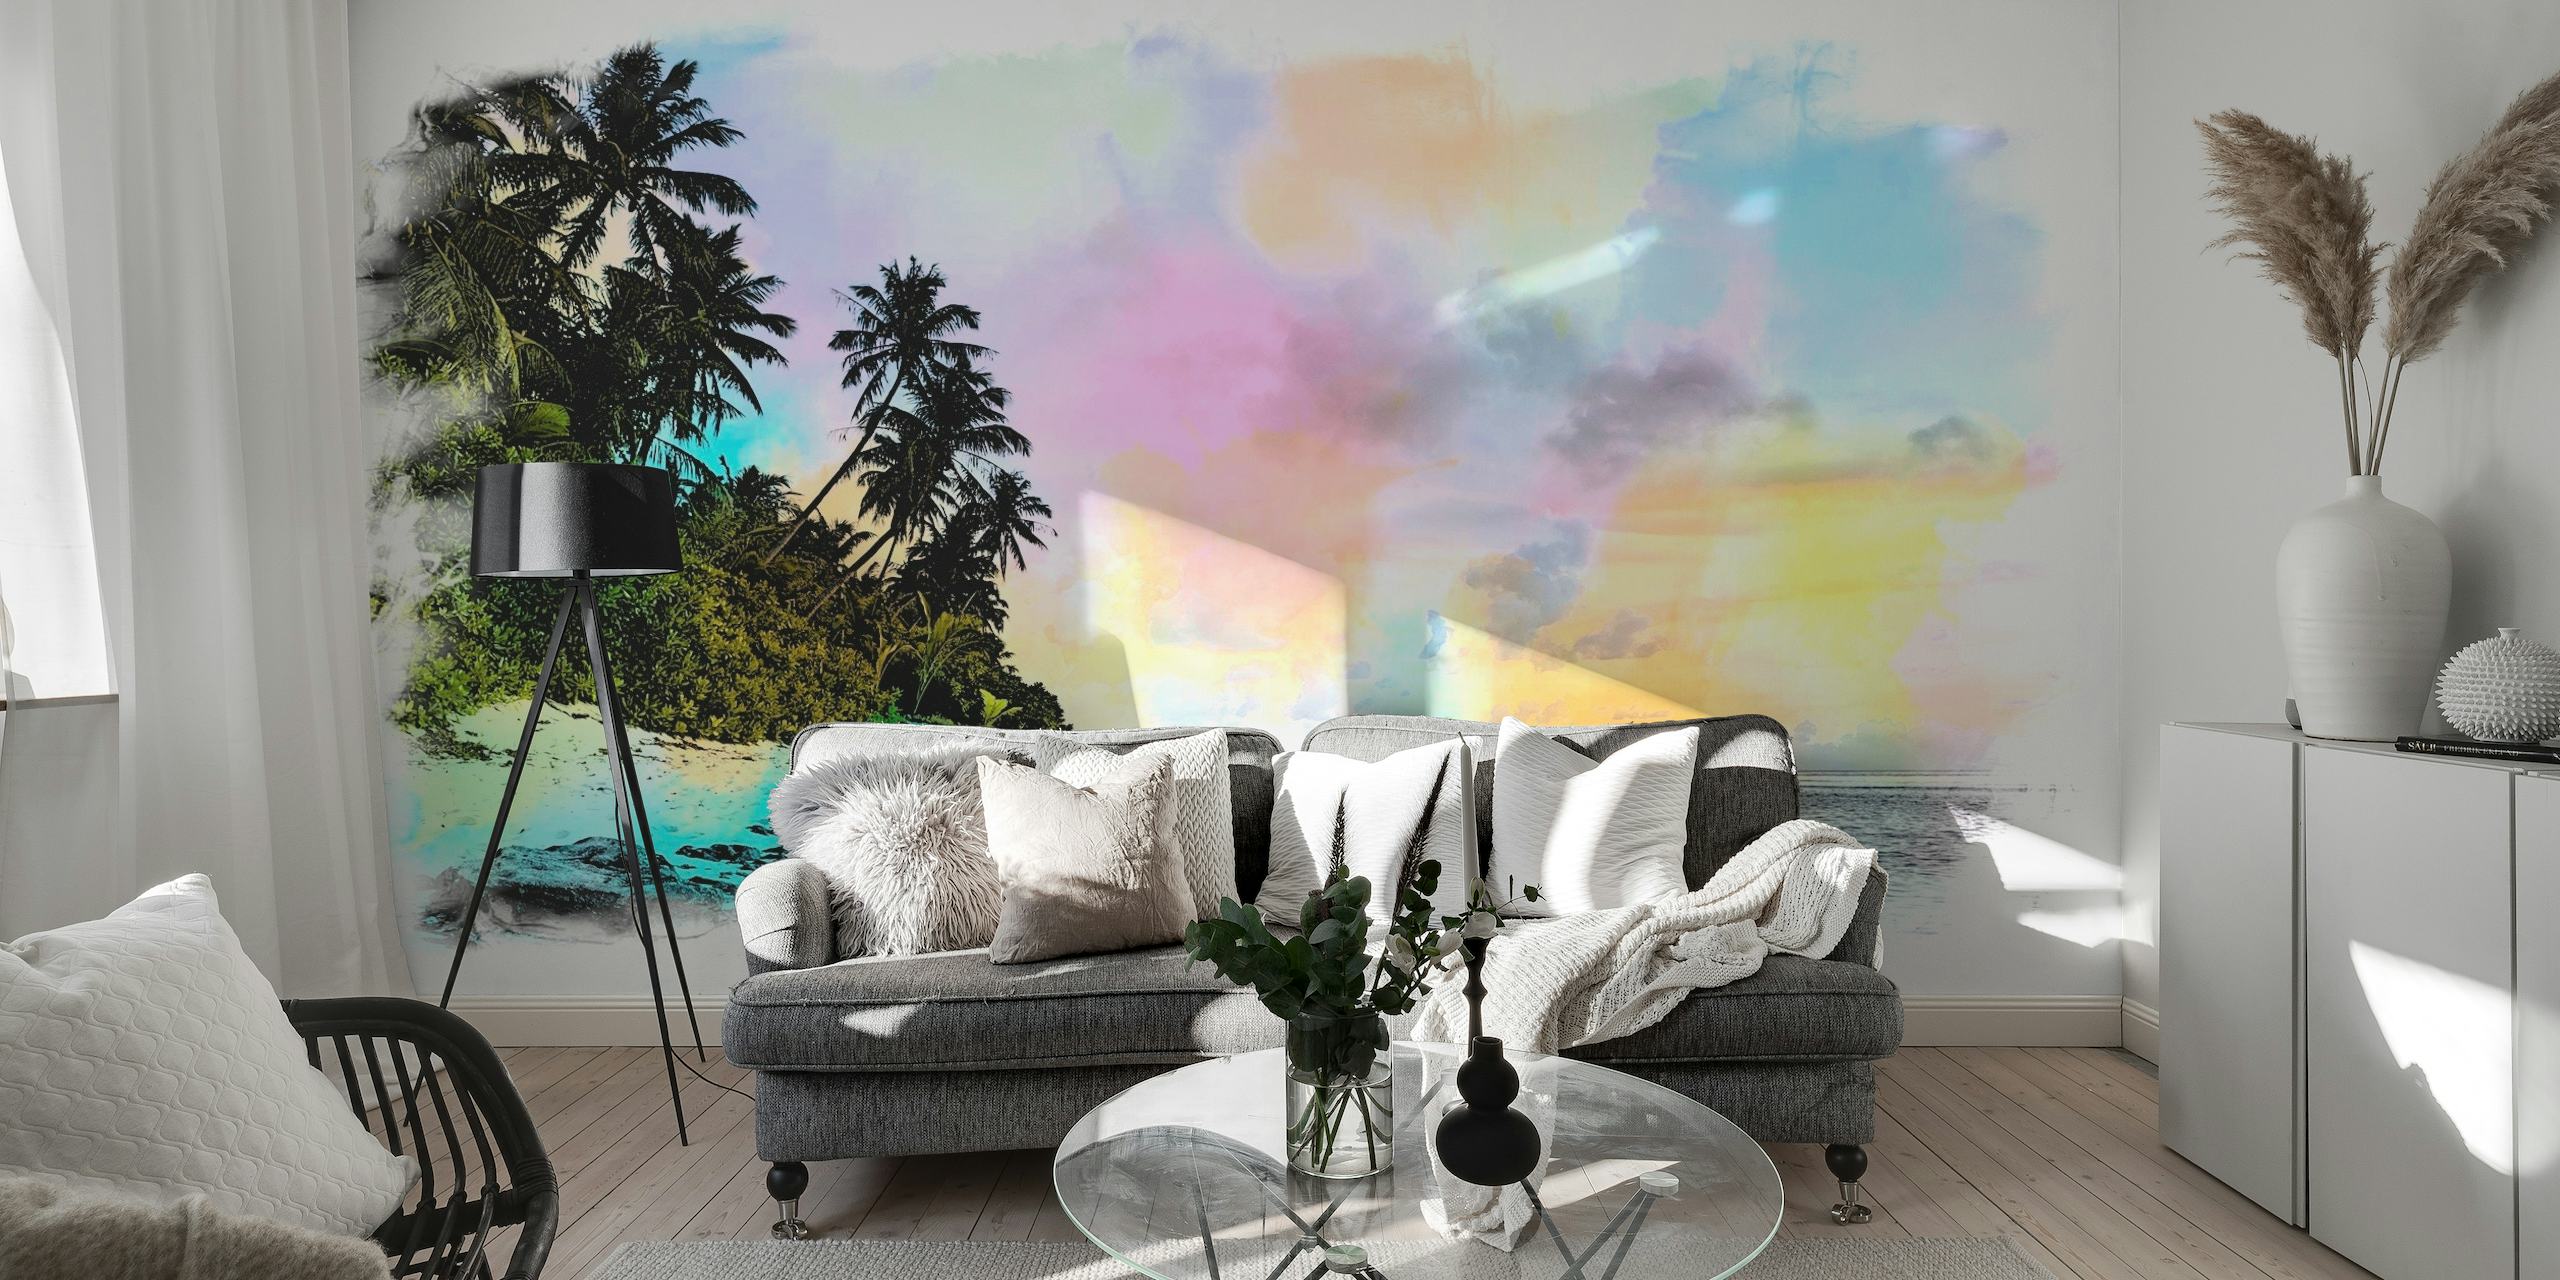 Kunstnerisk akvarellskildring av en sommerstrand med palmer og pastellhimmel